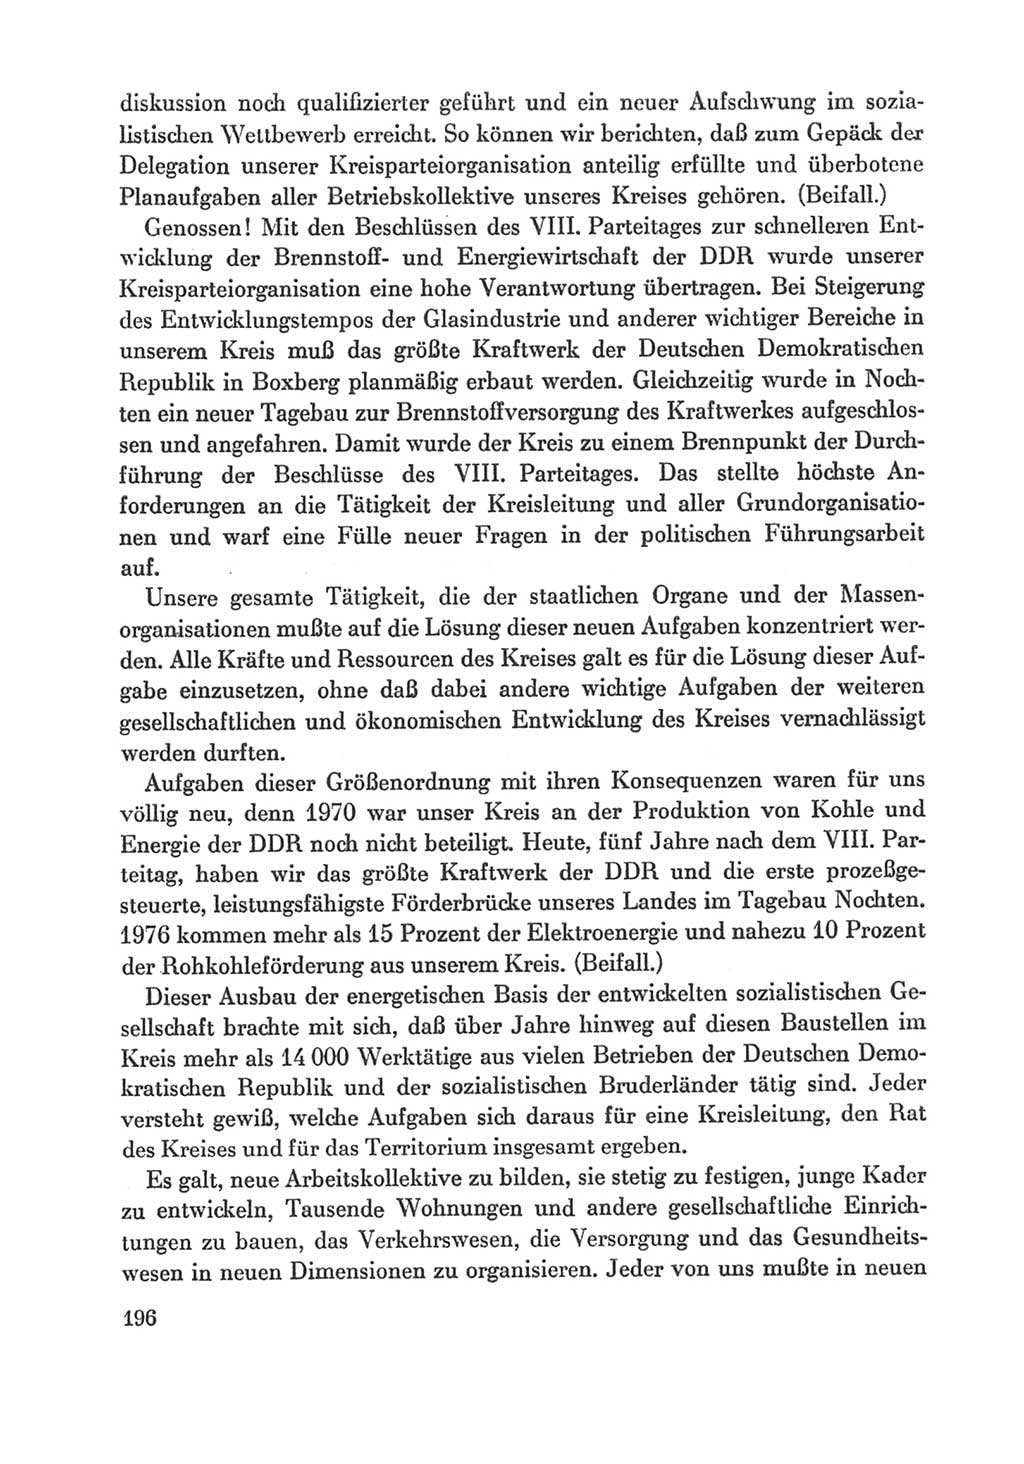 Protokoll der Verhandlungen des Ⅸ. Parteitages der Sozialistischen Einheitspartei Deutschlands (SED) [Deutsche Demokratische Republik (DDR)] 1976, Band 1, Seite 196 (Prot. Verh. Ⅸ. PT SED DDR 1976, Bd. 1, S. 196)